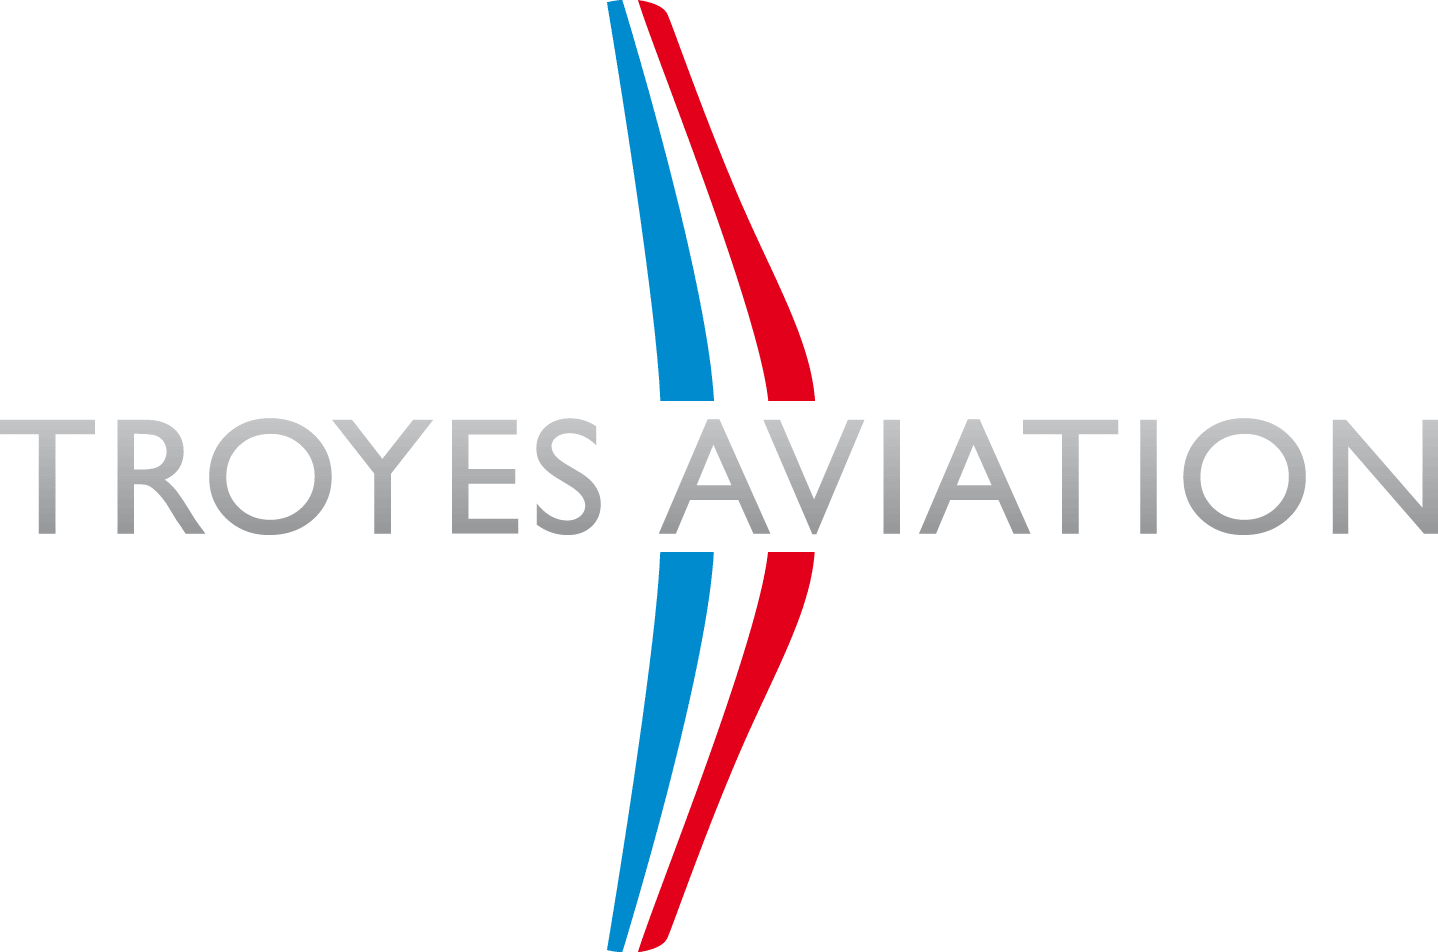 troyes aviation logo 1